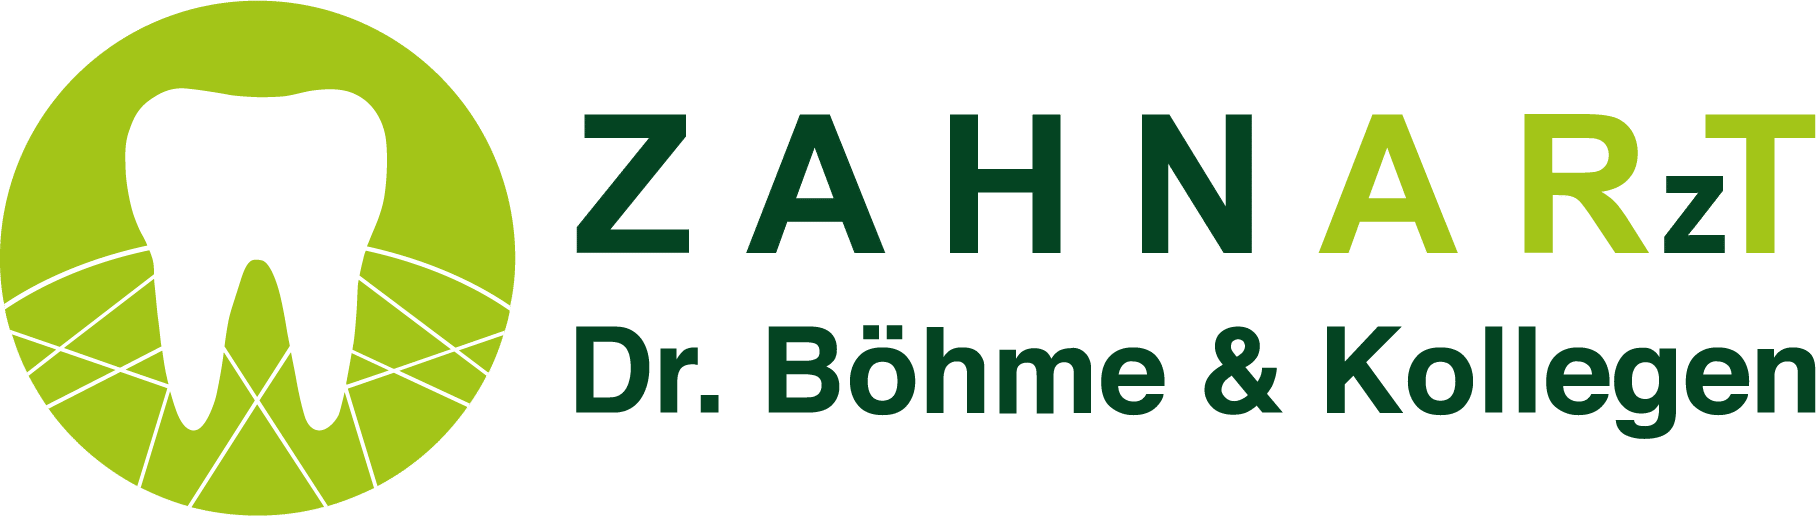 Logo-Zahnarztpraxis-liniert-1.png